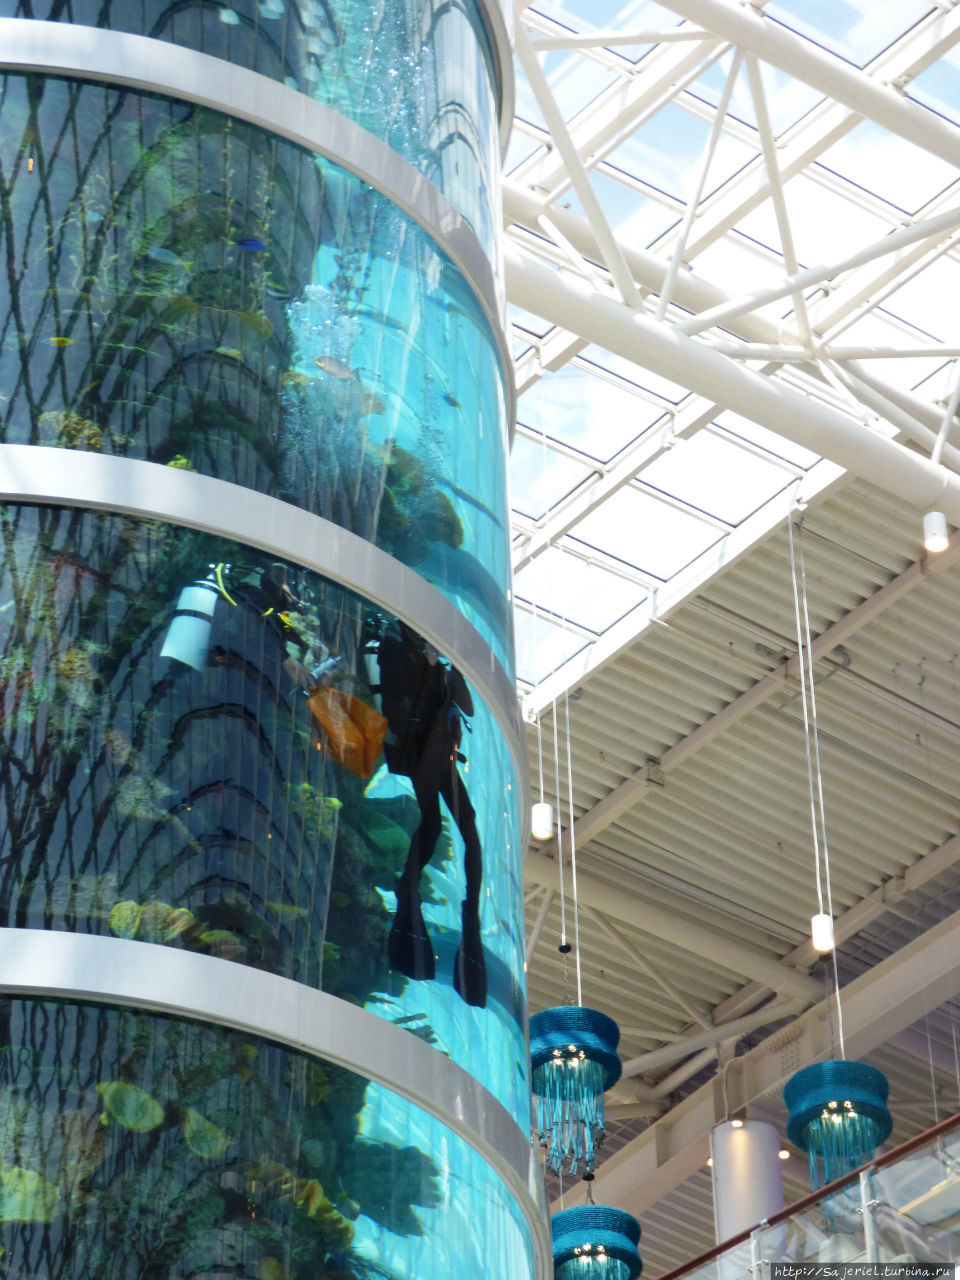 Самый высокий цилиндрический аквариум в мире Москва, Россия